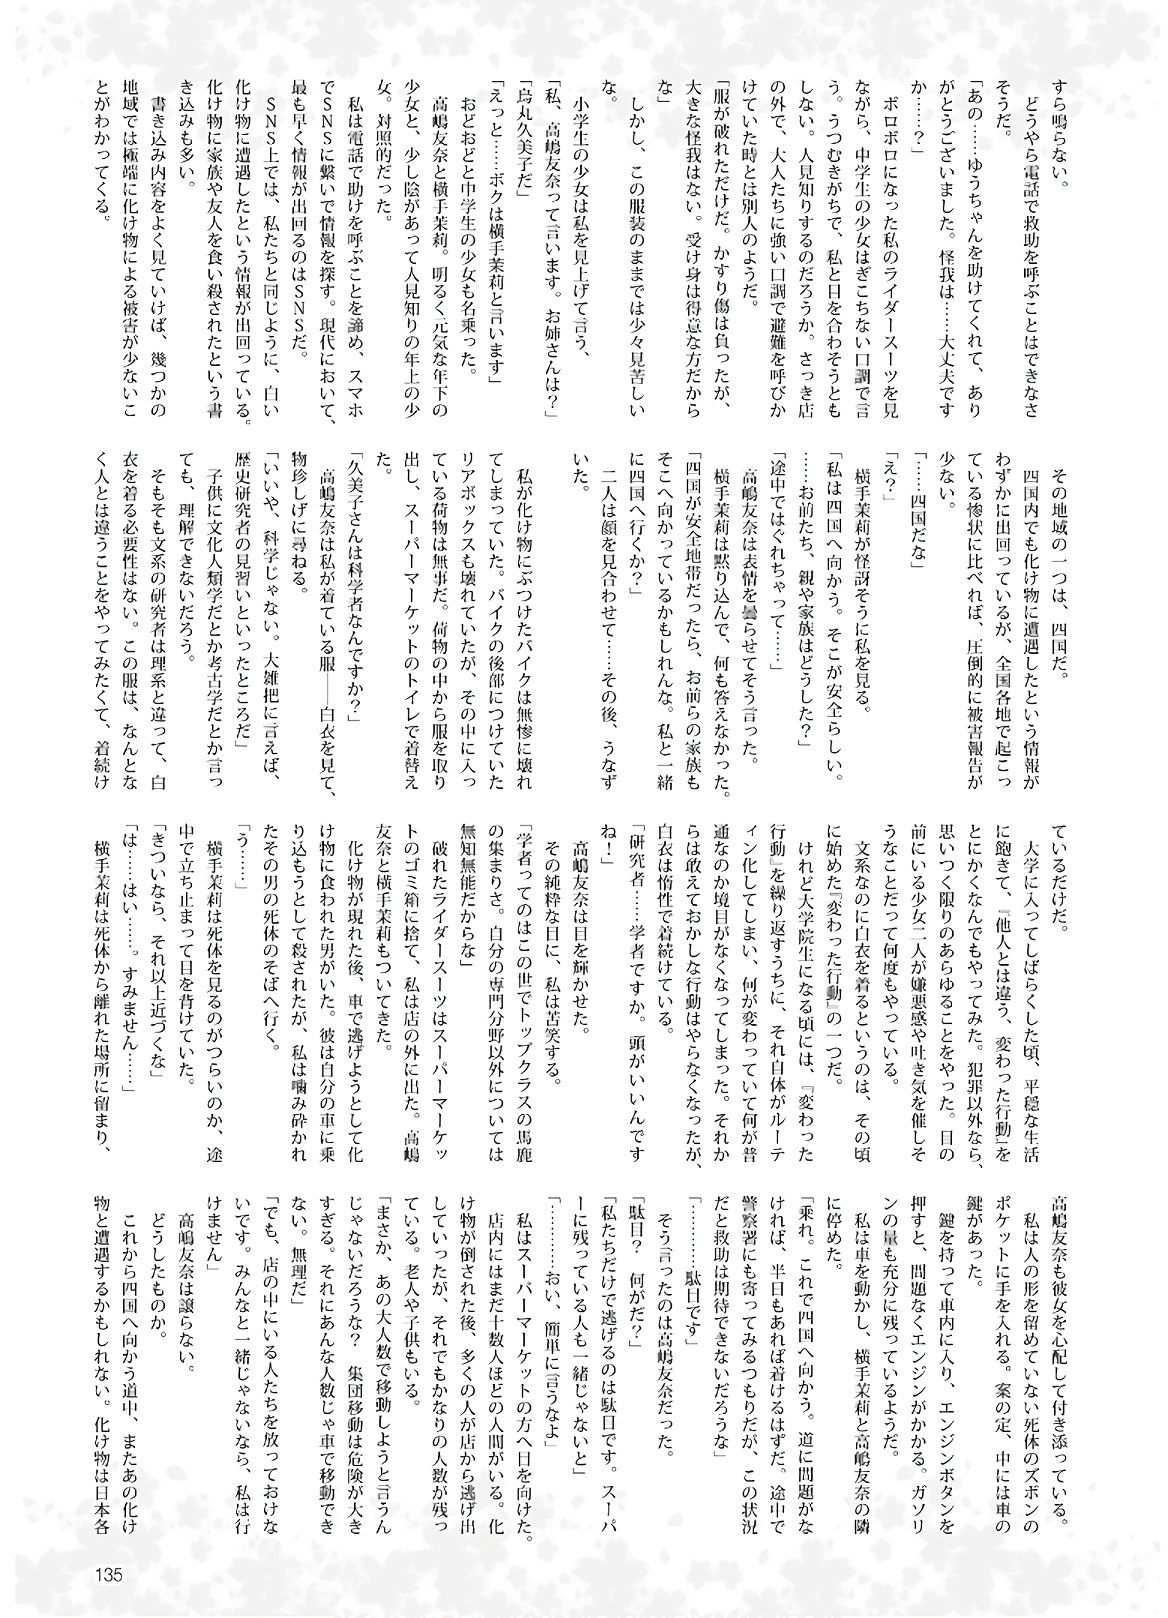 Dengeki G's Magazine #286 - May 2021 132